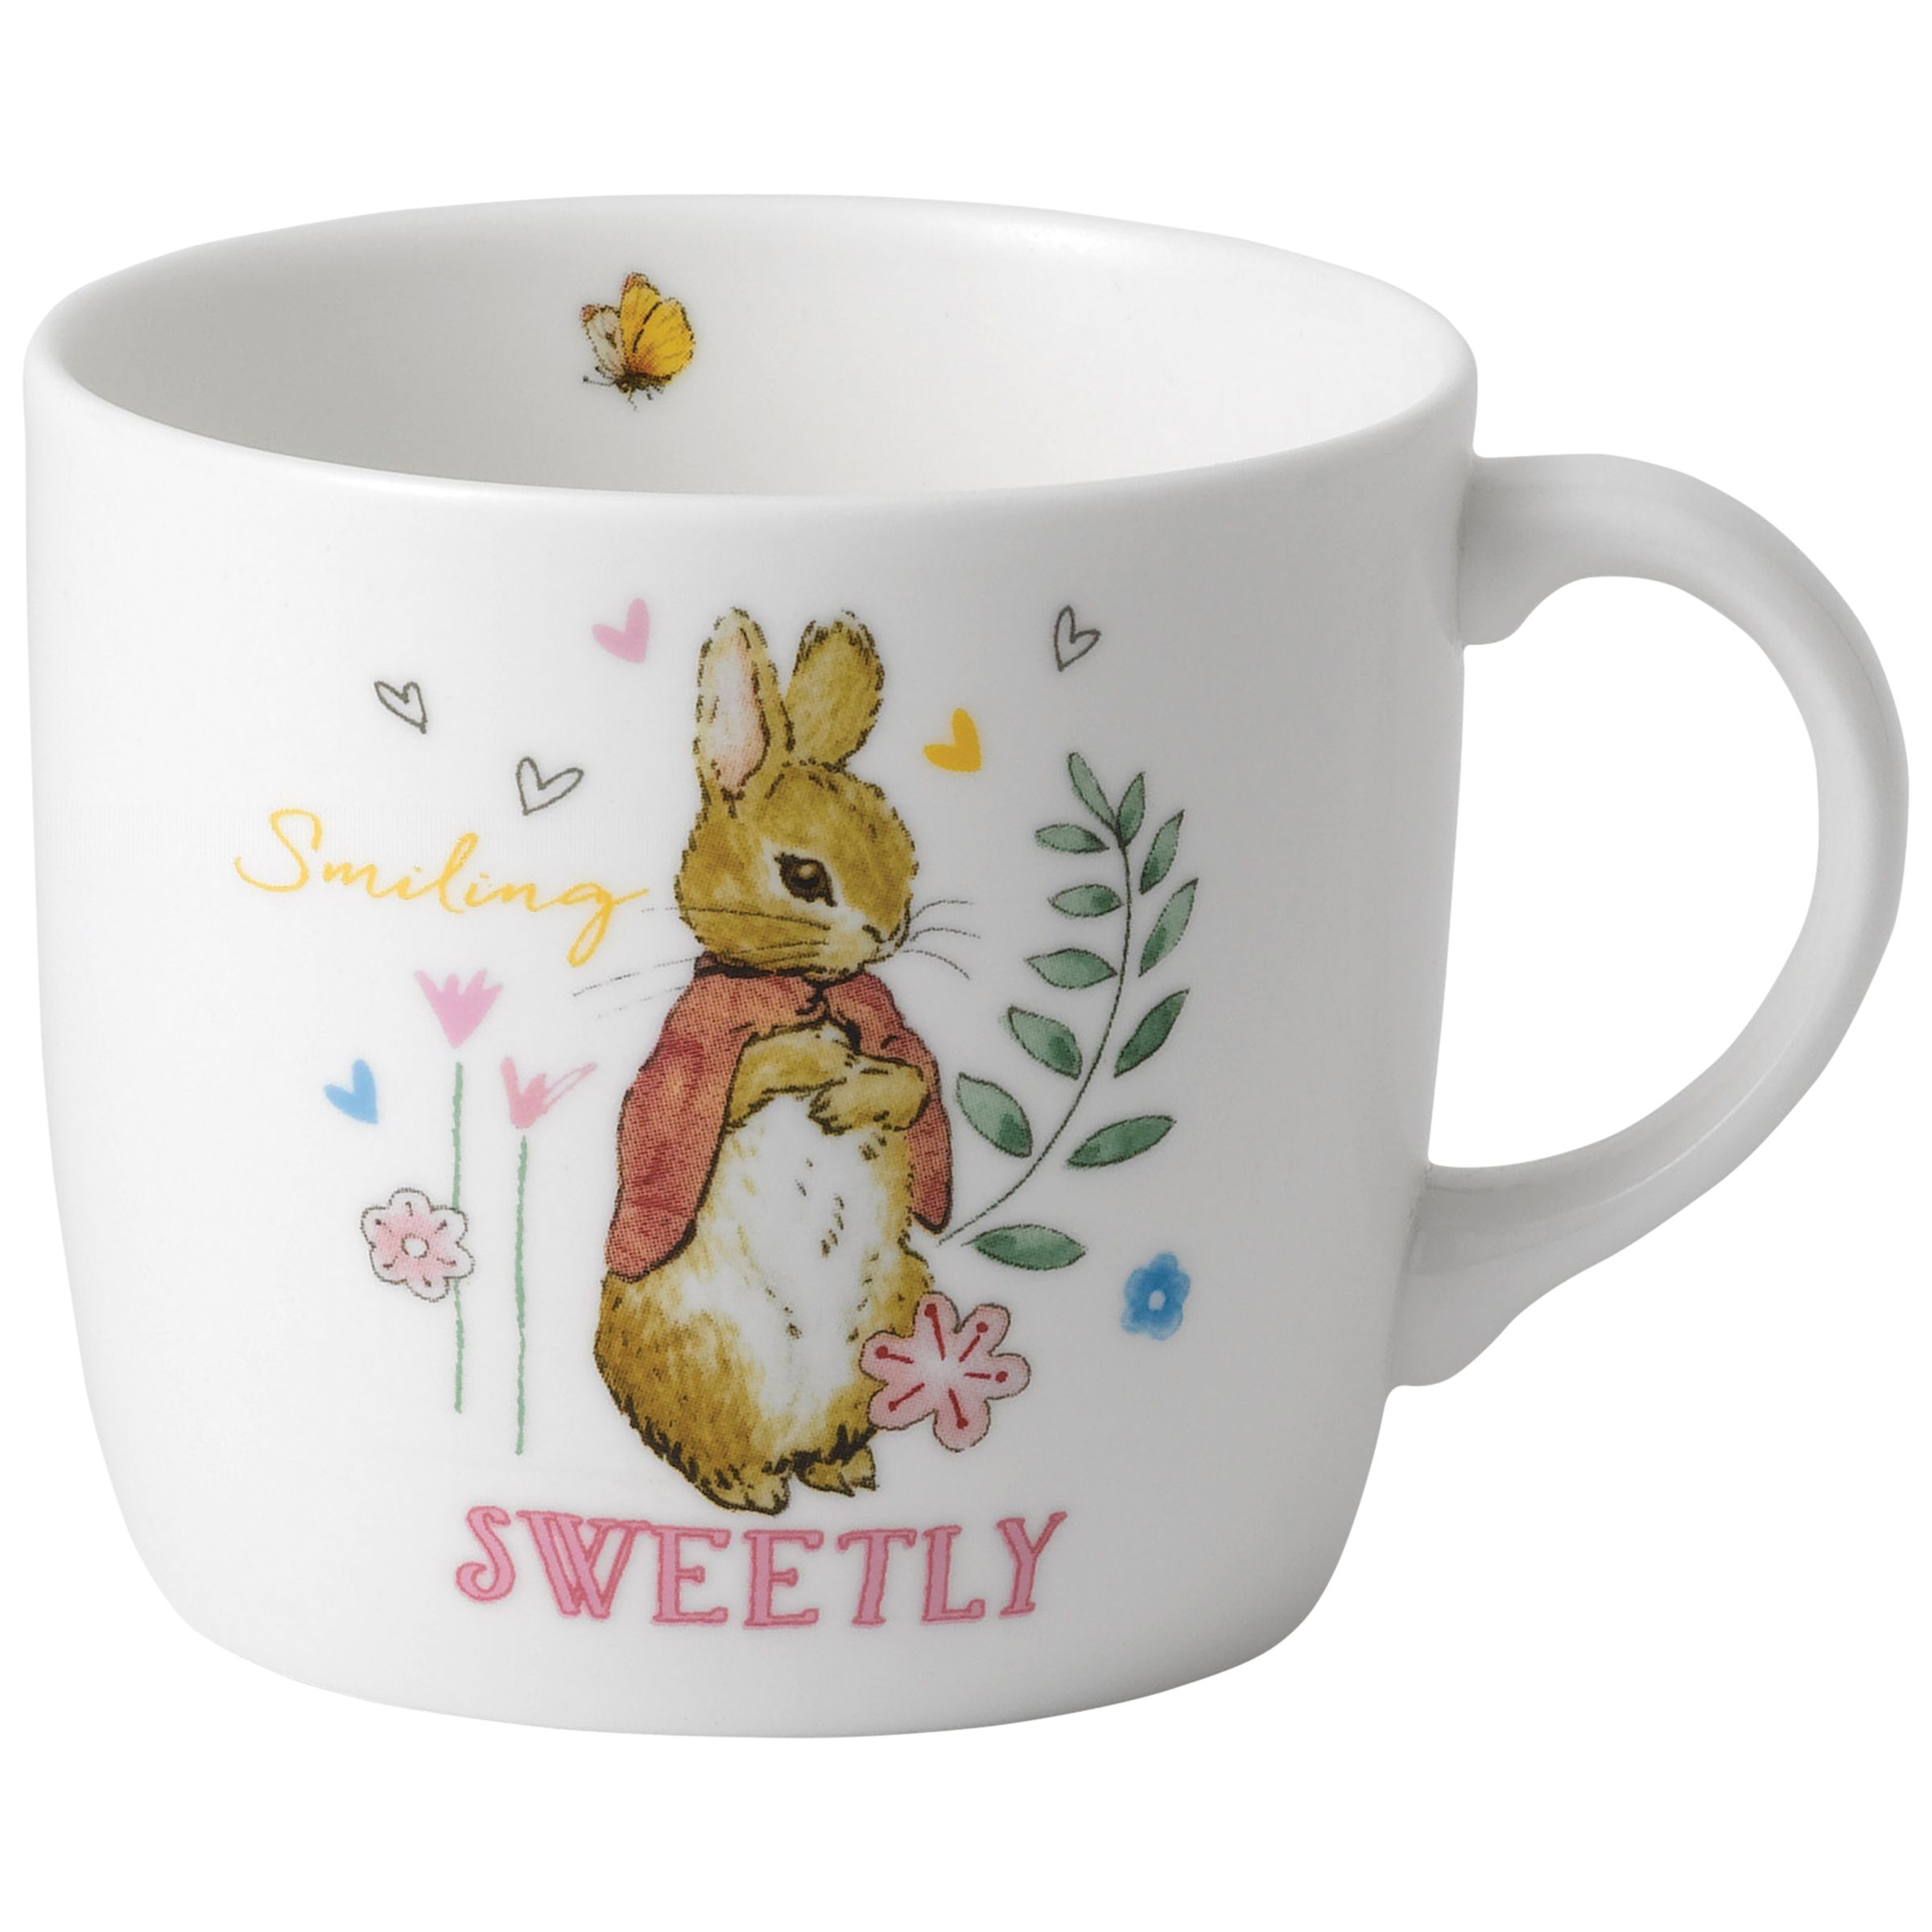 Image of Beatrix Potter Peter Rabbit Smiling Sweetly Wedgwood Mug